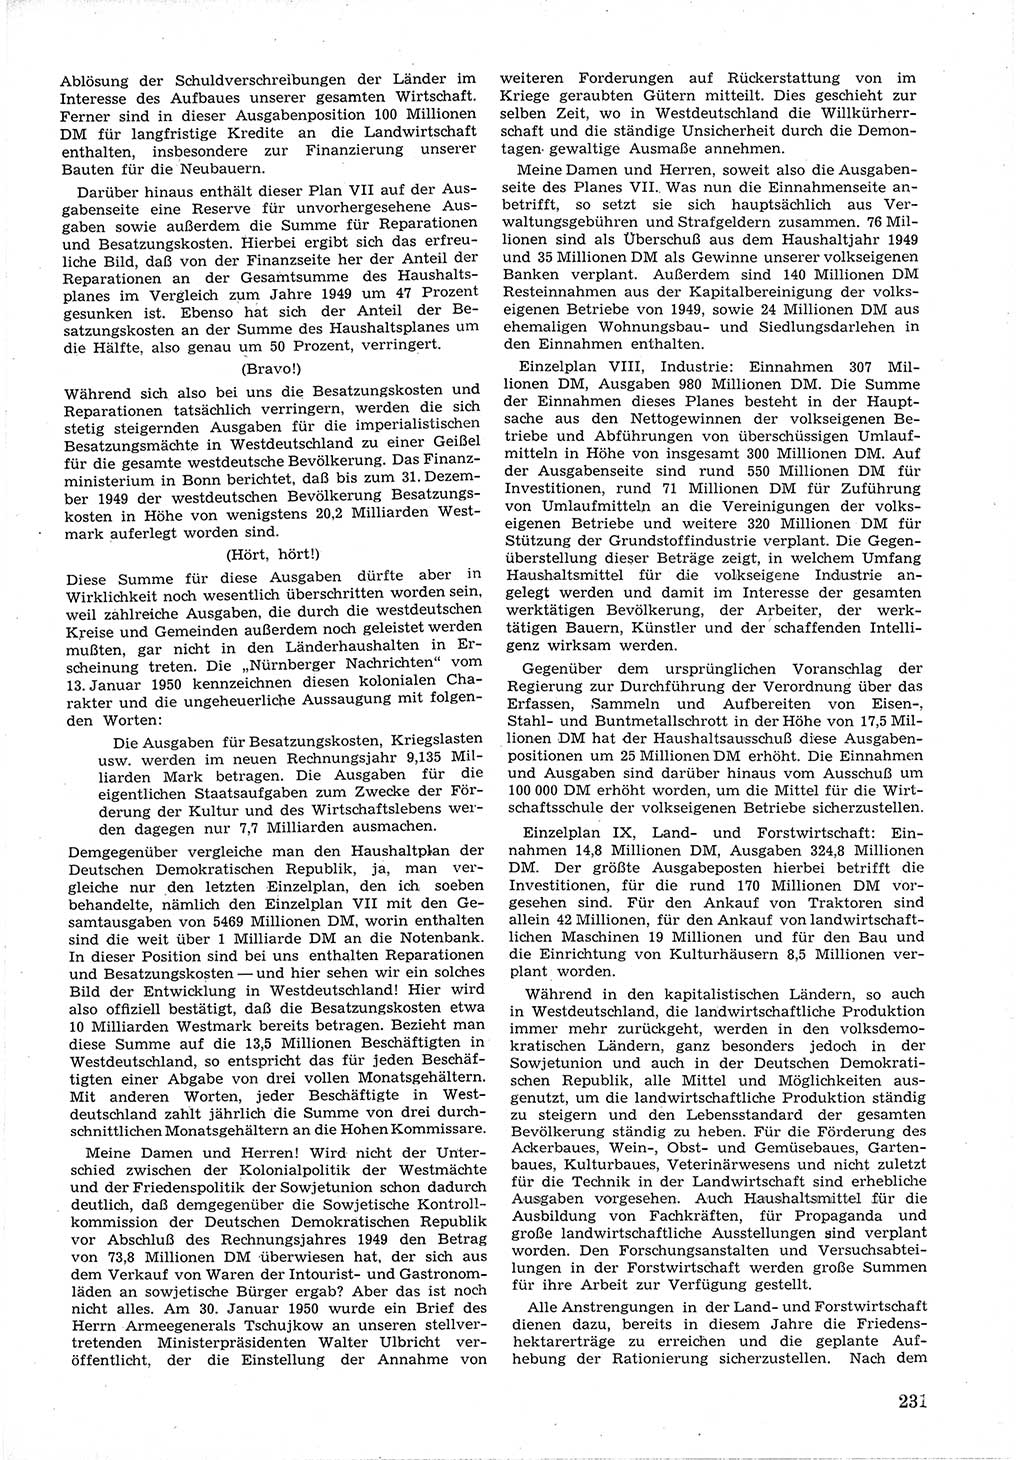 Provisorische Volkskammer (VK) der Deutschen Demokratischen Republik (DDR) 1949-1950, Dokument 245 (Prov. VK DDR 1949-1950, Dok. 245)